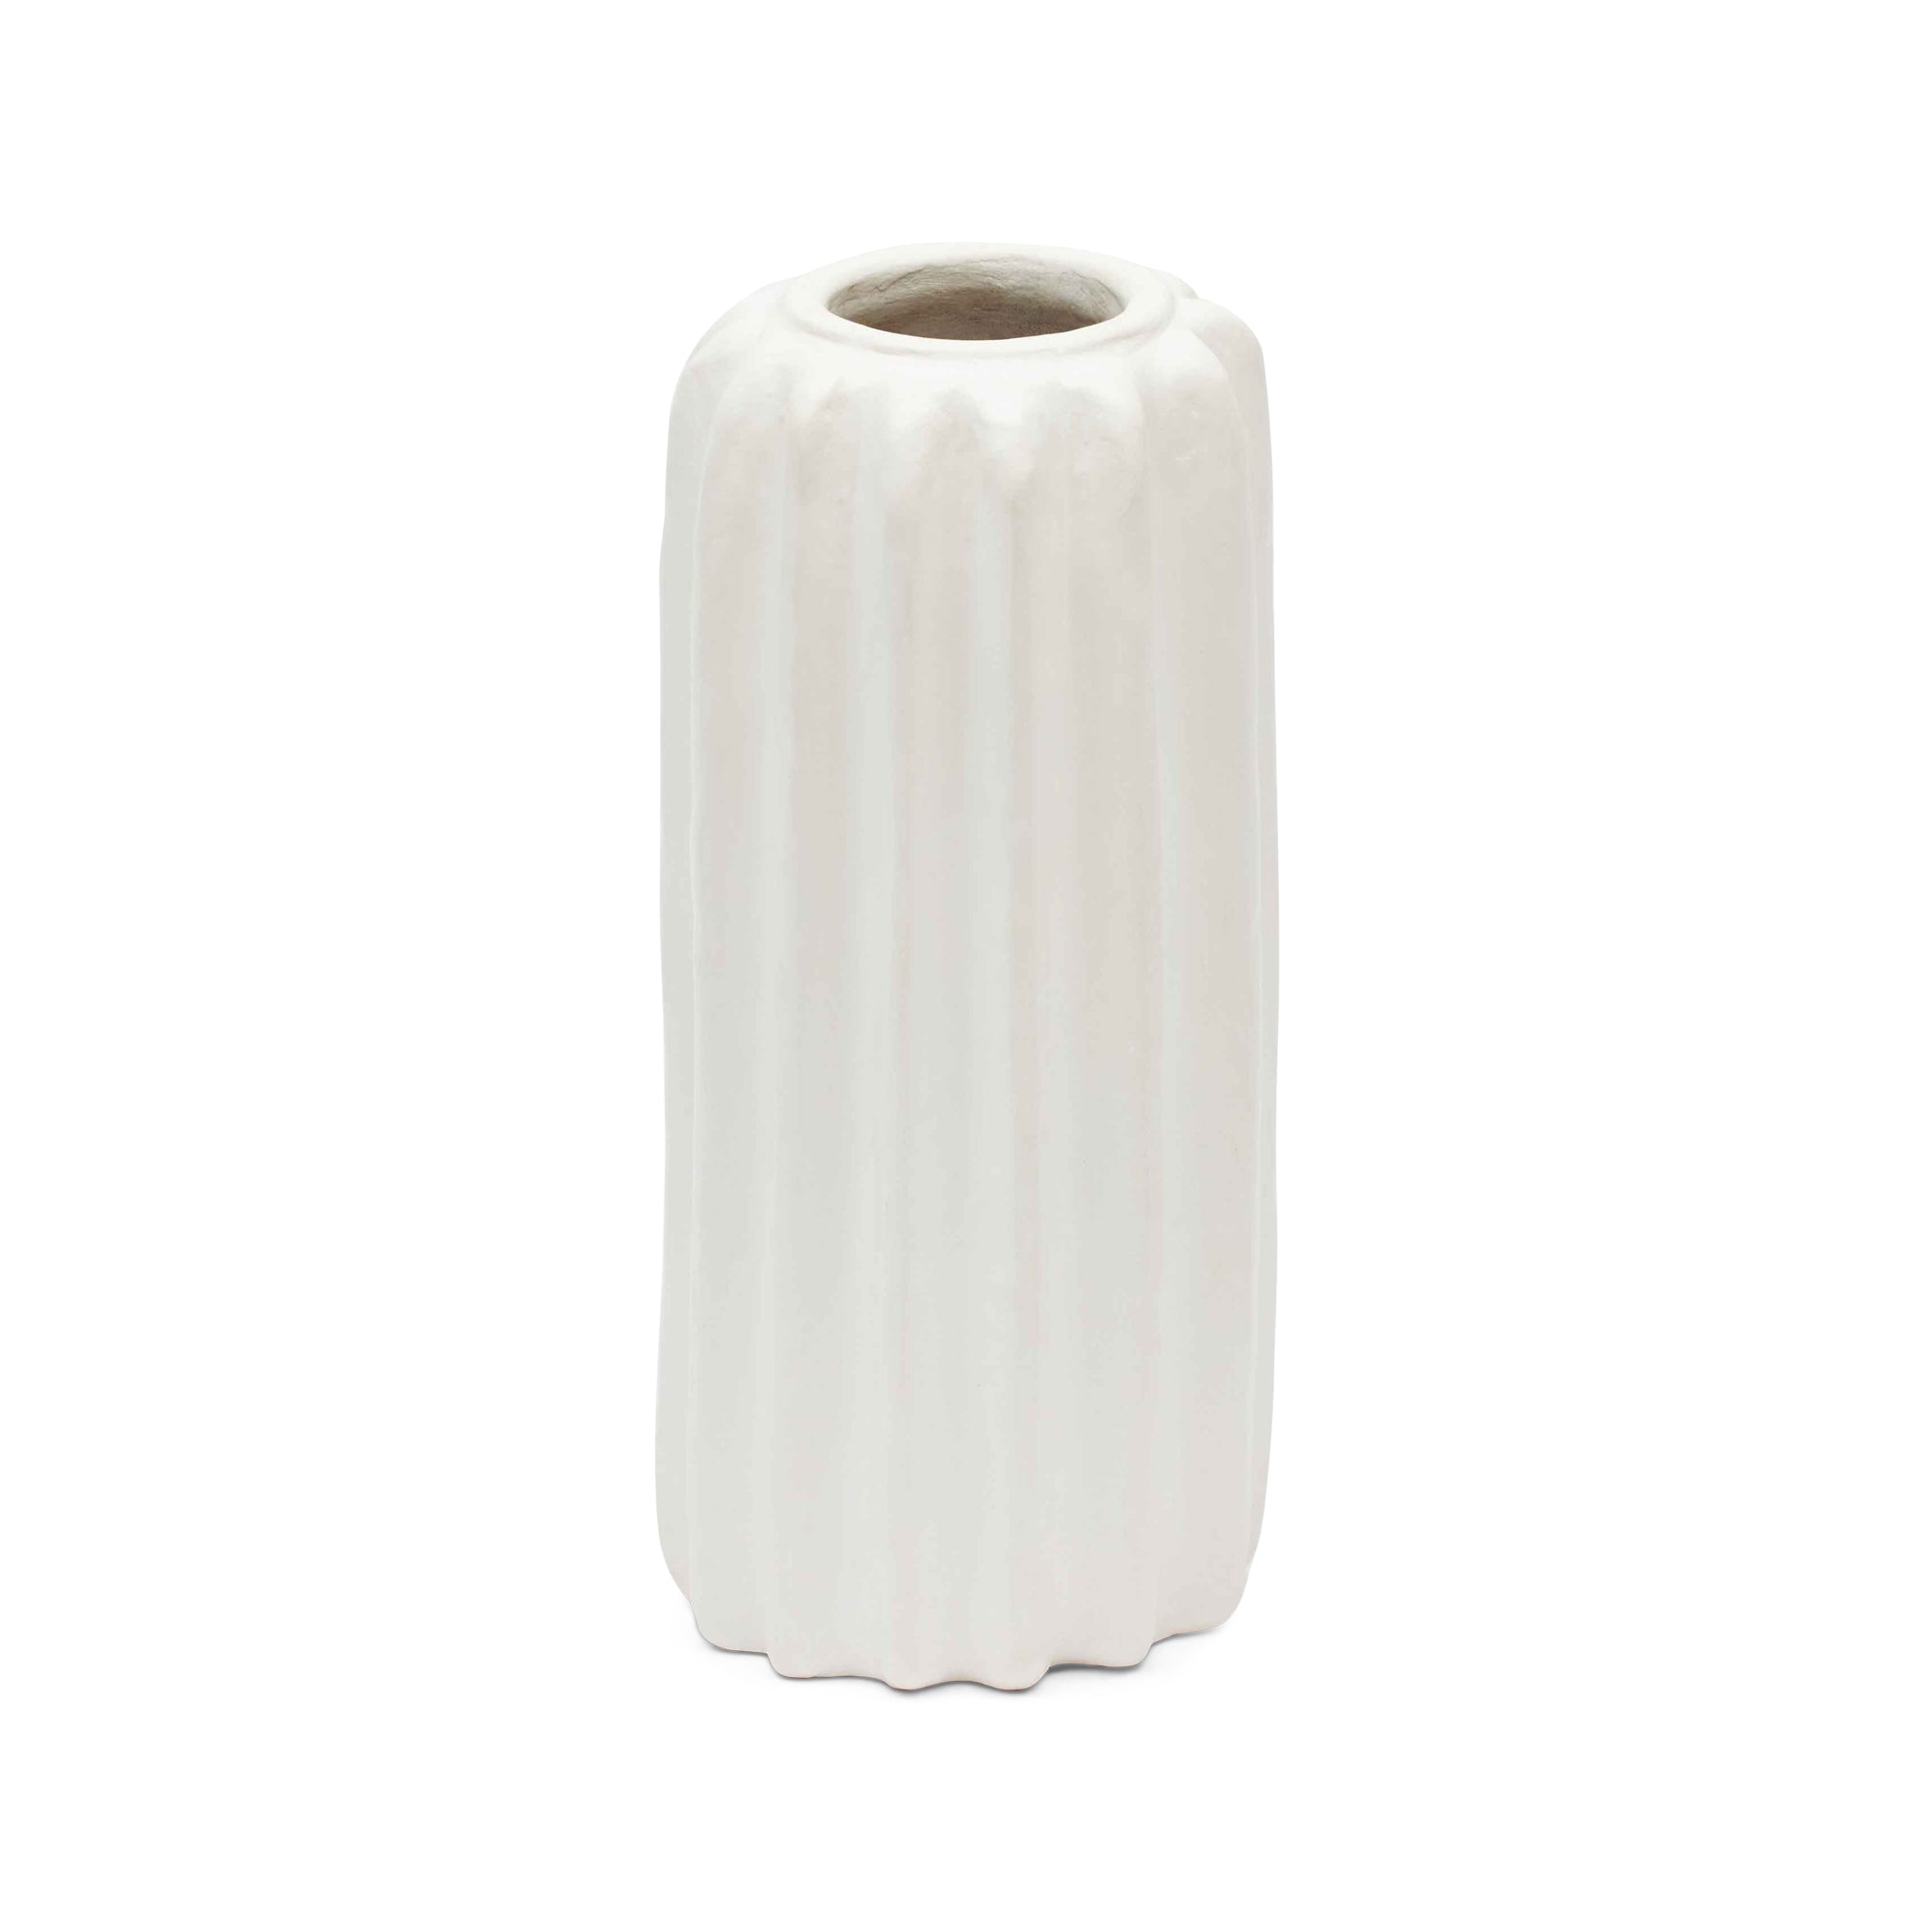 Ika Vase Large White